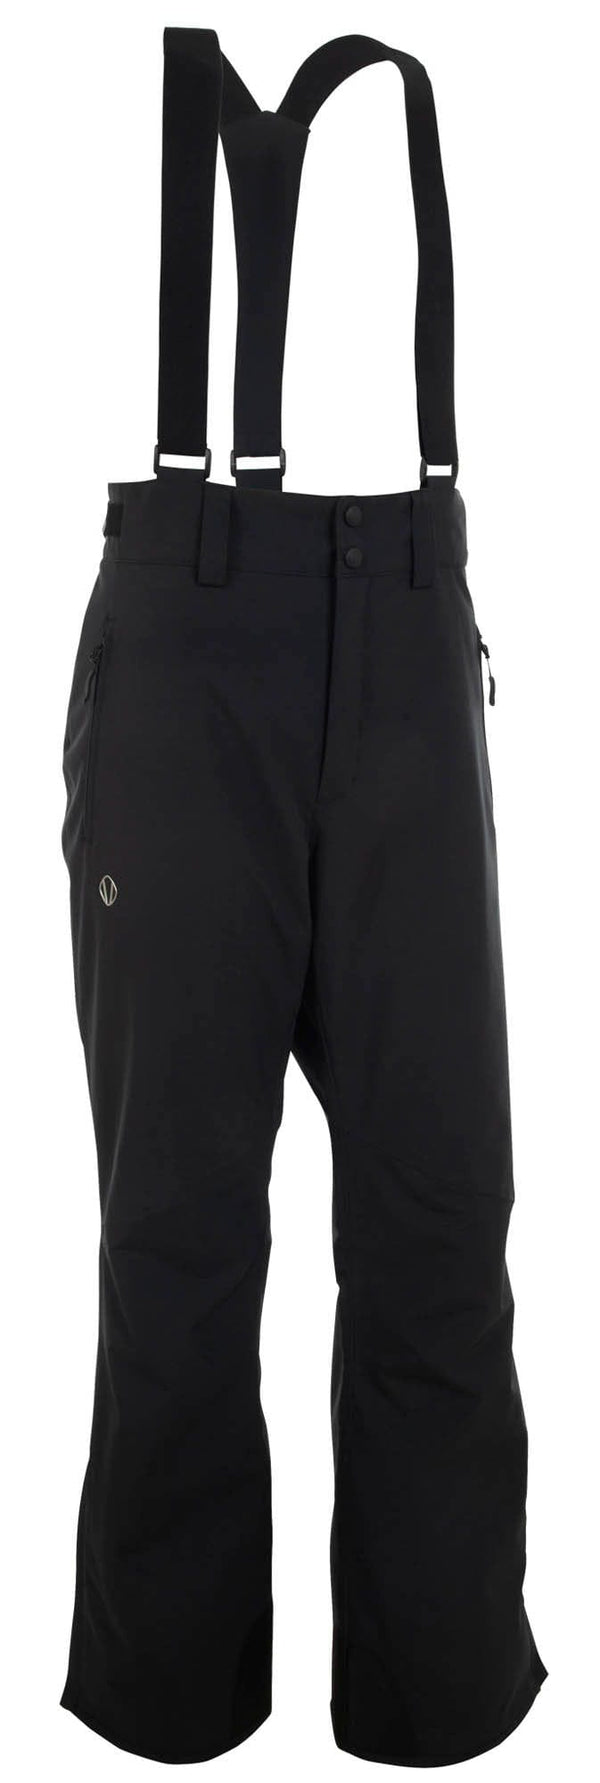 Sunice CLOTHING - Men - Outerwear - Pant Sunice *23W* Men's Brett Overall Ski Pants -Inseam 30" -